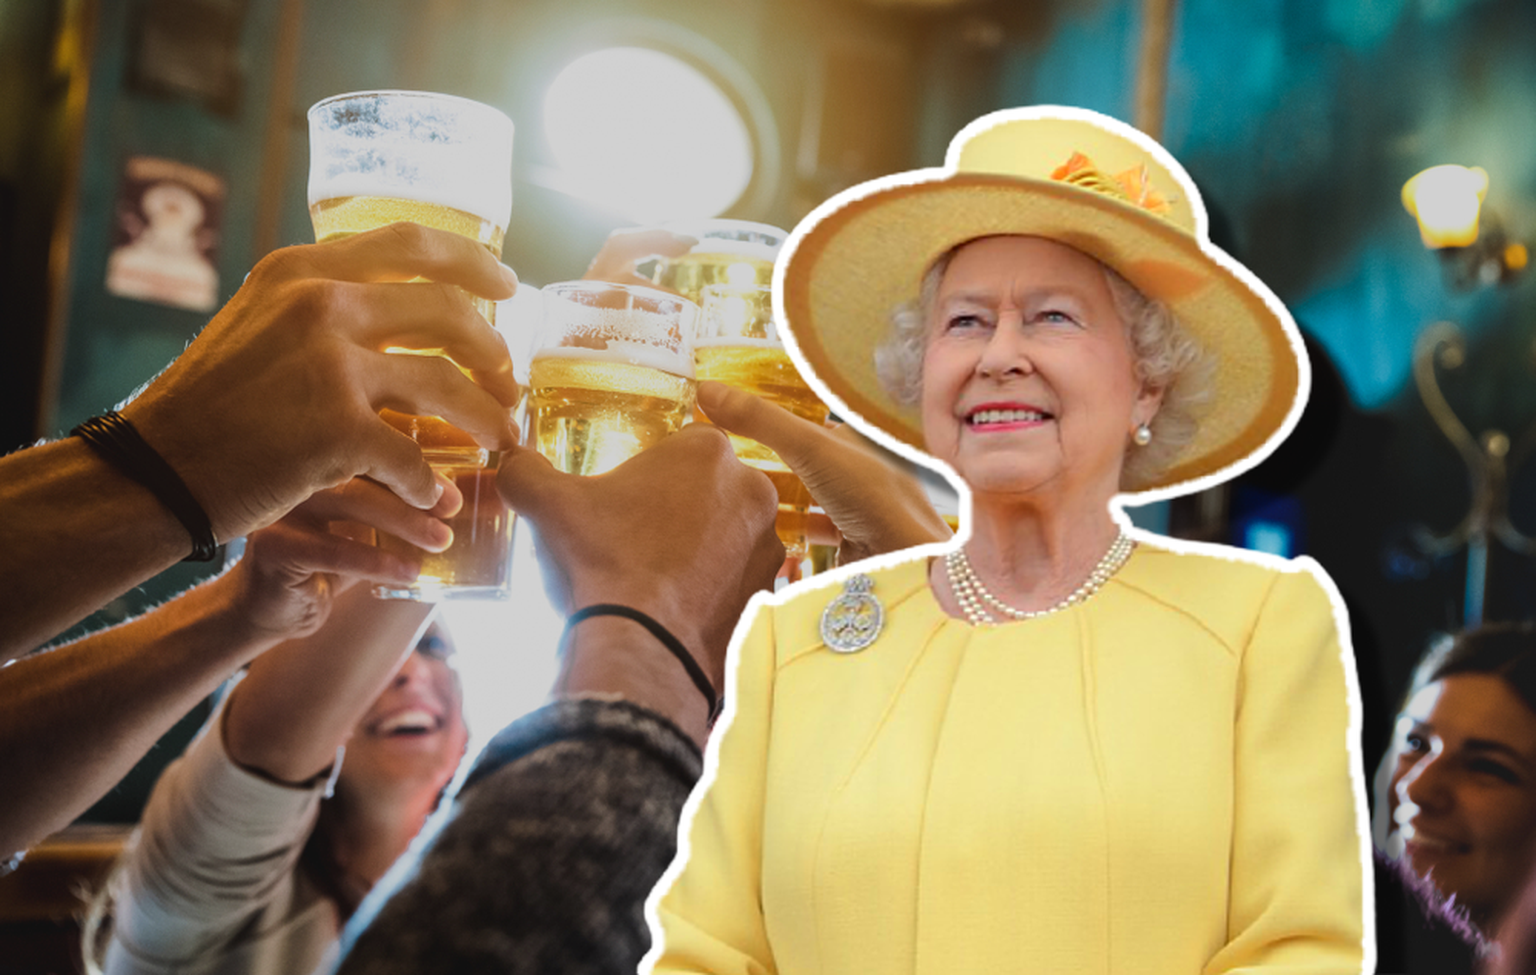 Arrêtez tout! La reine Elisabeth II lance sa propre marque de bière. Watson.